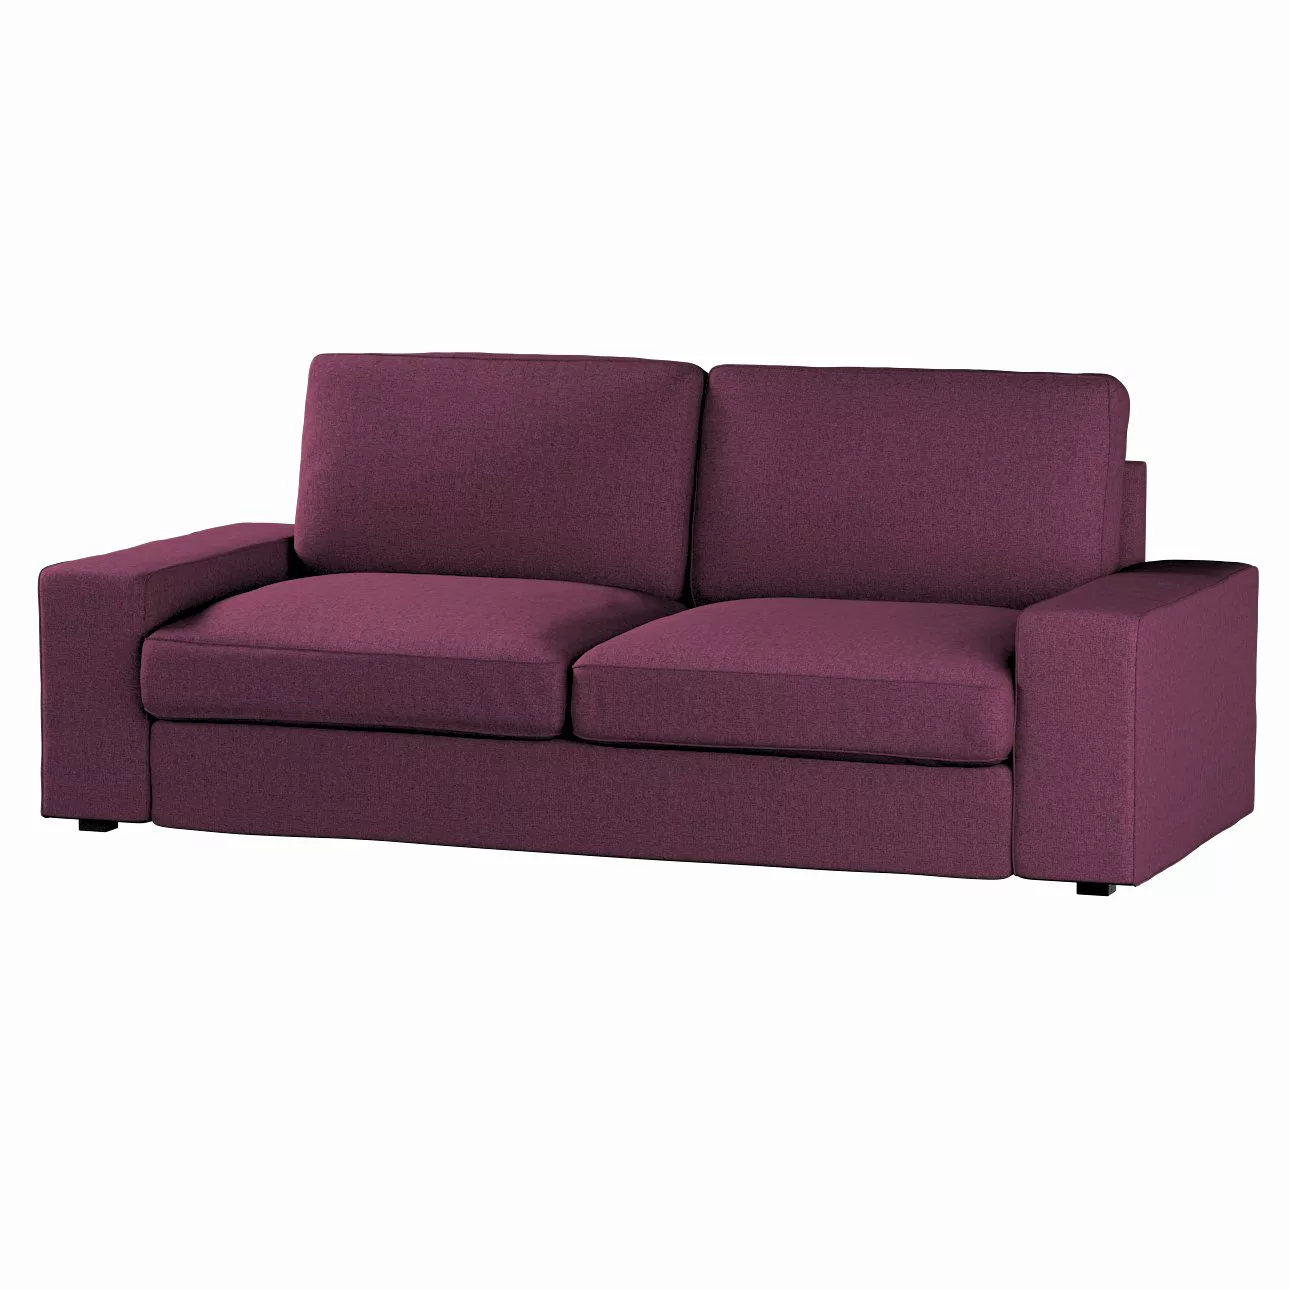 Bezug für Kivik 3-Sitzer Sofa, pflaumenviolett, Bezug für Sofa Kivik 3-Sitz günstig online kaufen